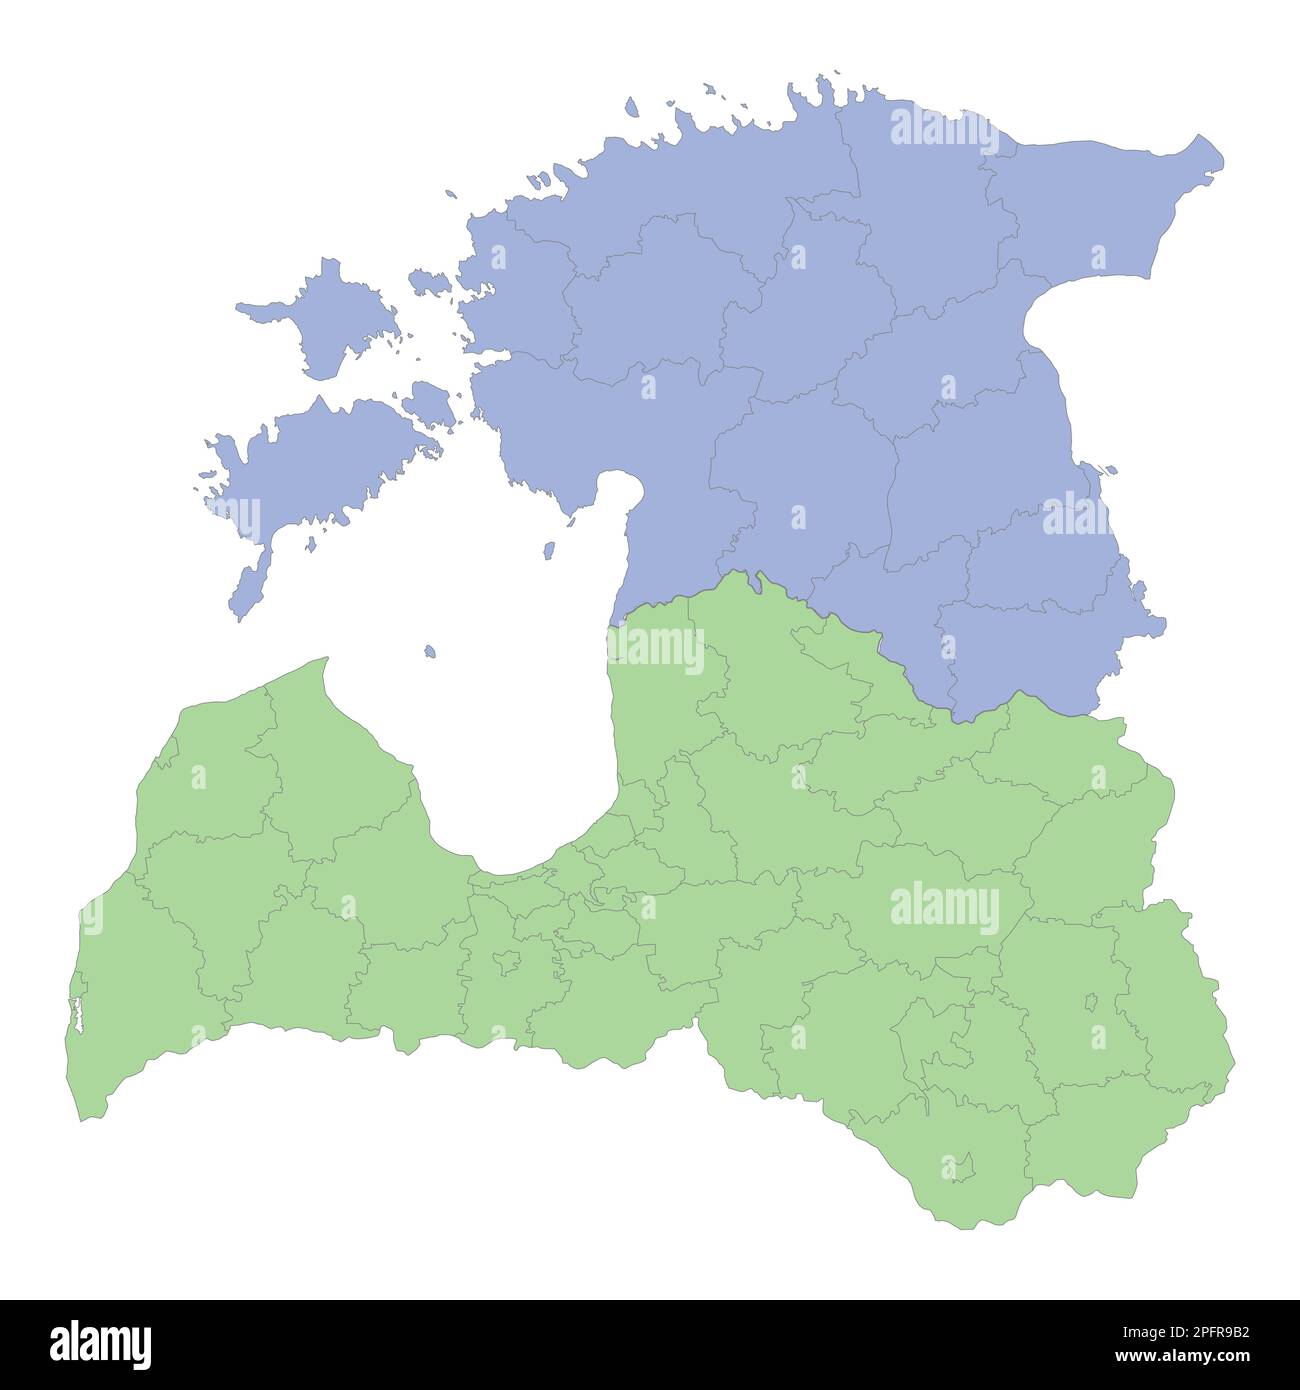 Mappa politica di alta qualità della Lettonia e dell'Estonia con i confini delle regioni o delle province. Illustrazione vettoriale Illustrazione Vettoriale